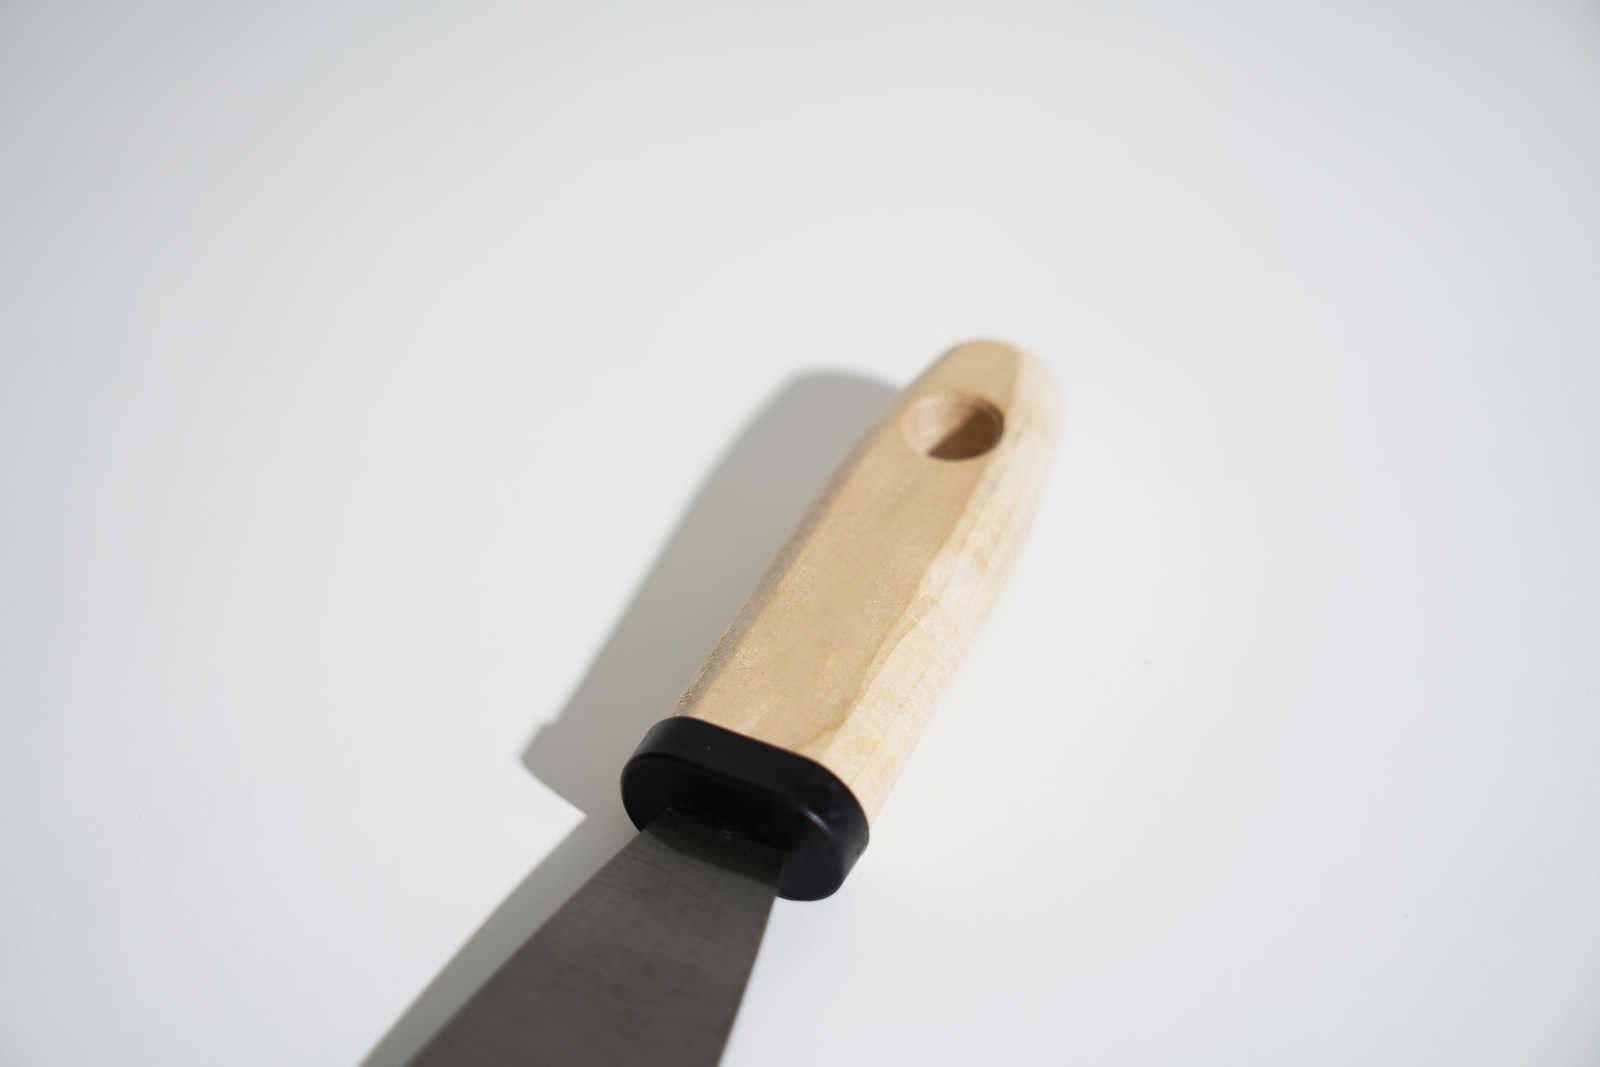             Espátula de pintor de 40 mm con hoja de acero flexible y mango de madera
        